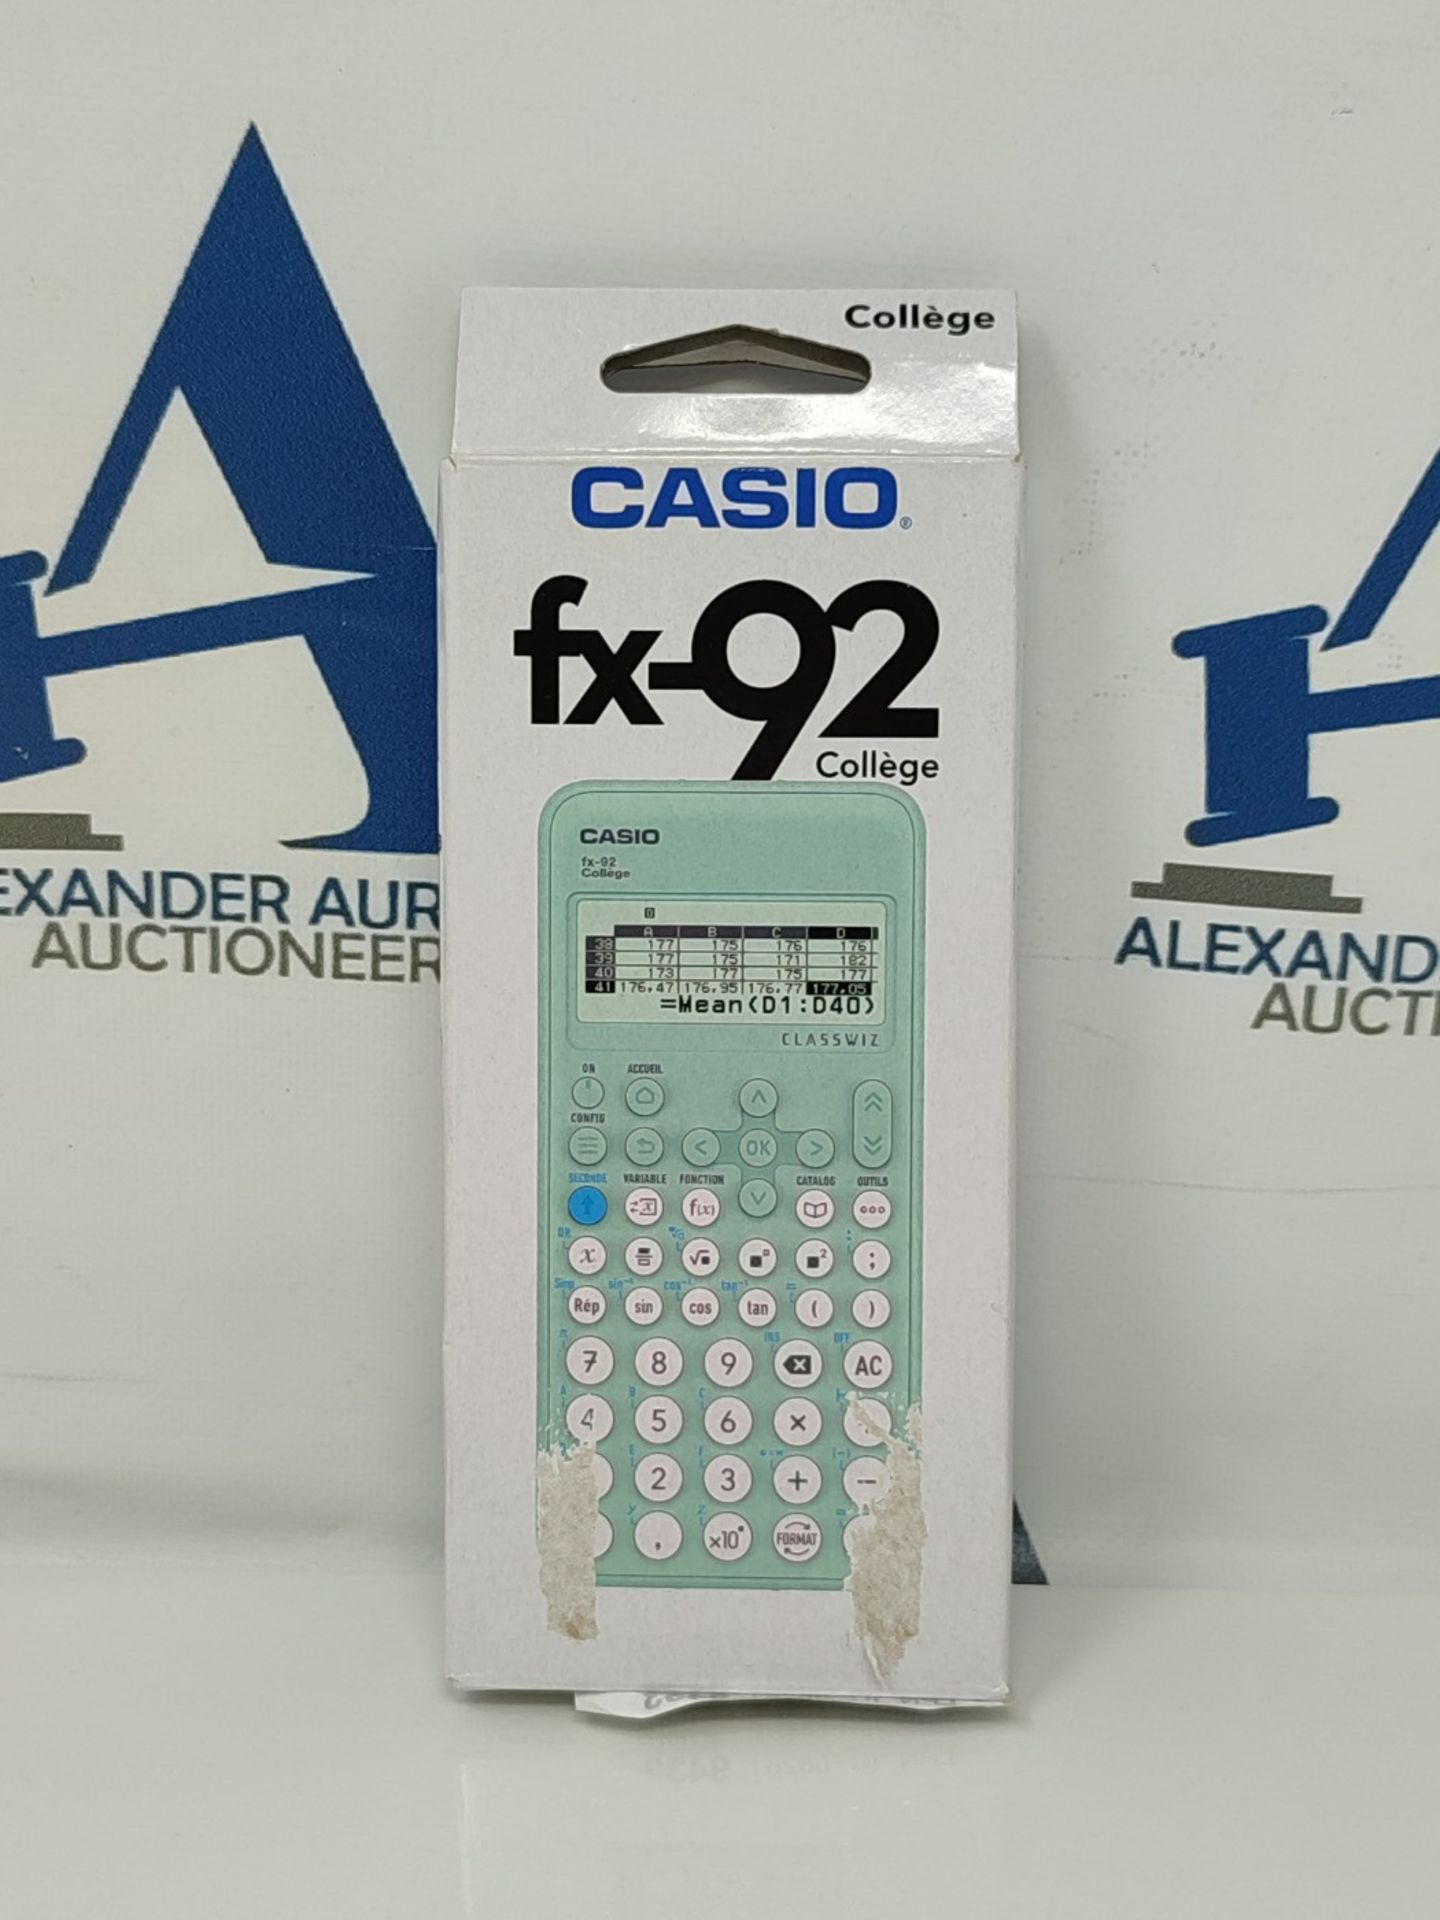 Casio School Calculator FX-92 College Classwiz Engineering/Scientific Green - Image 2 of 3